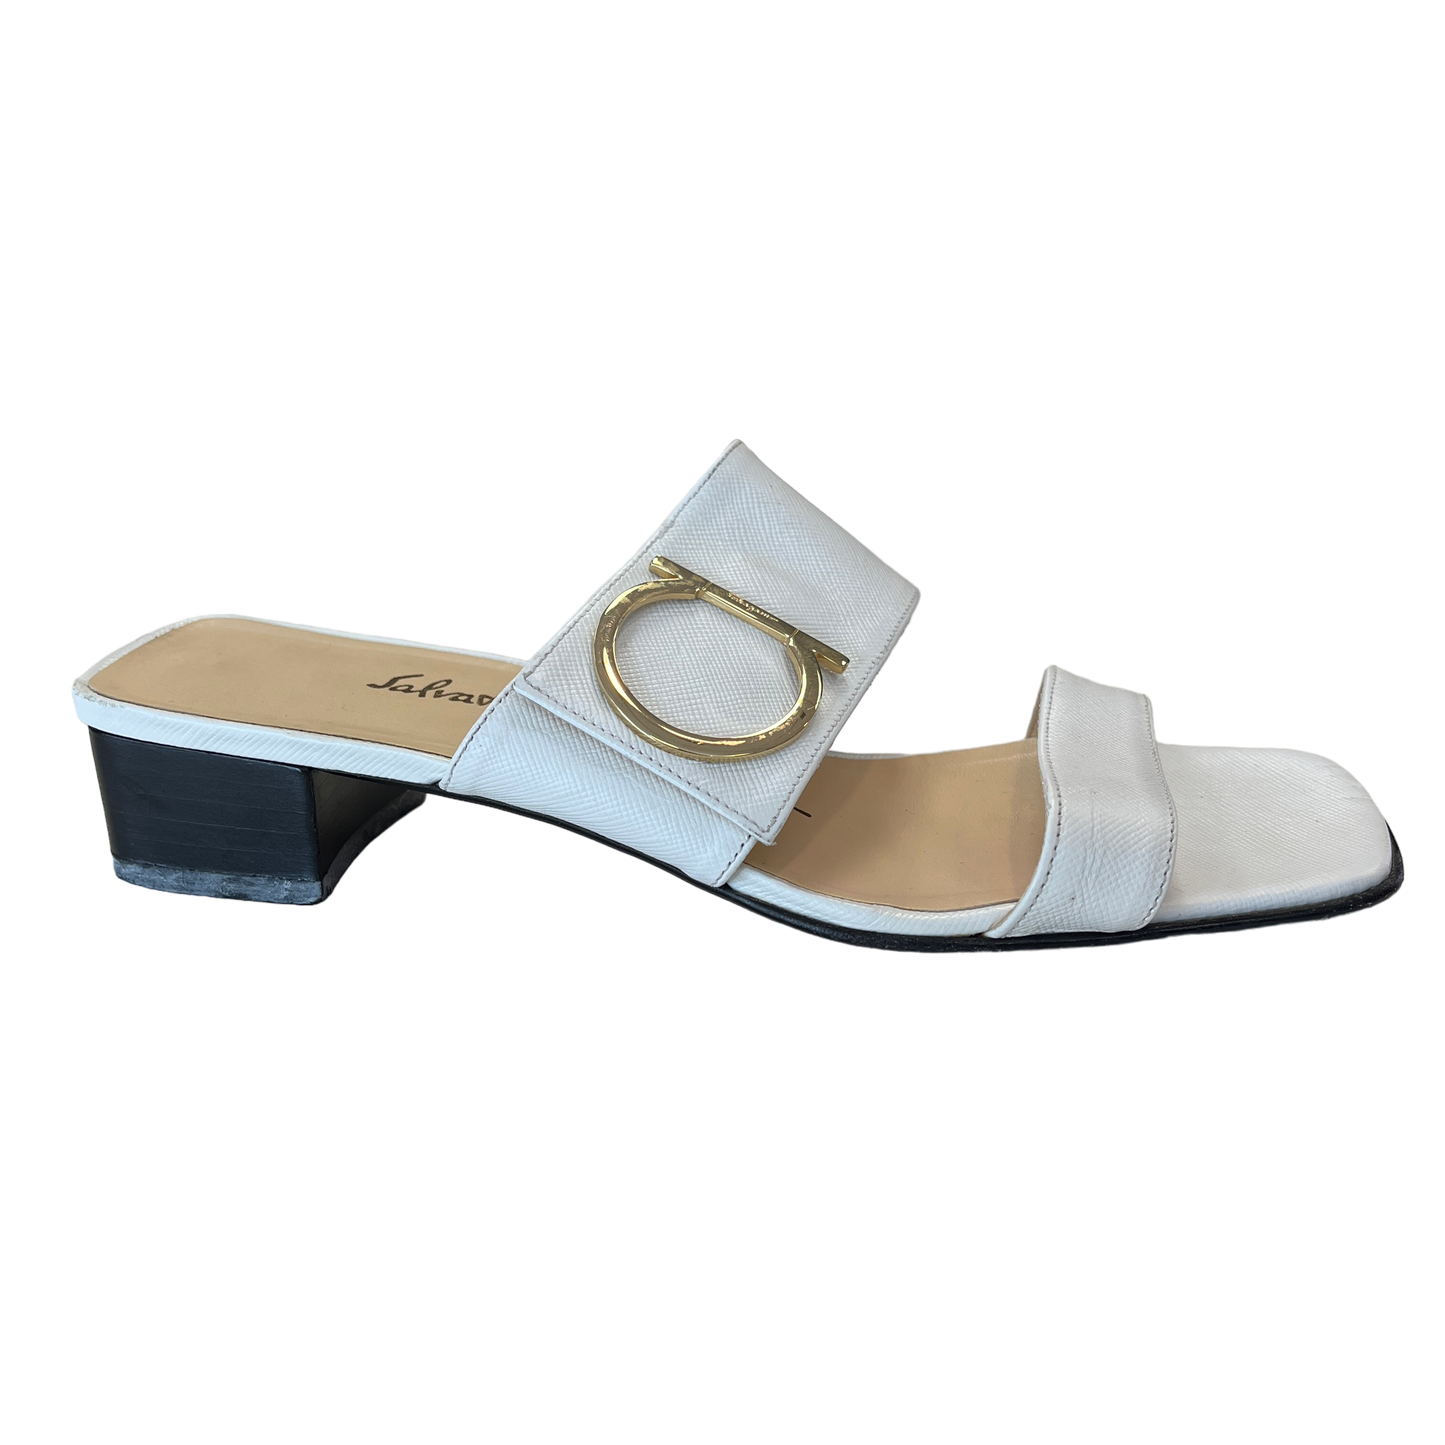 Sandals Luxury Designer By Ferragamo  Size: 6.5